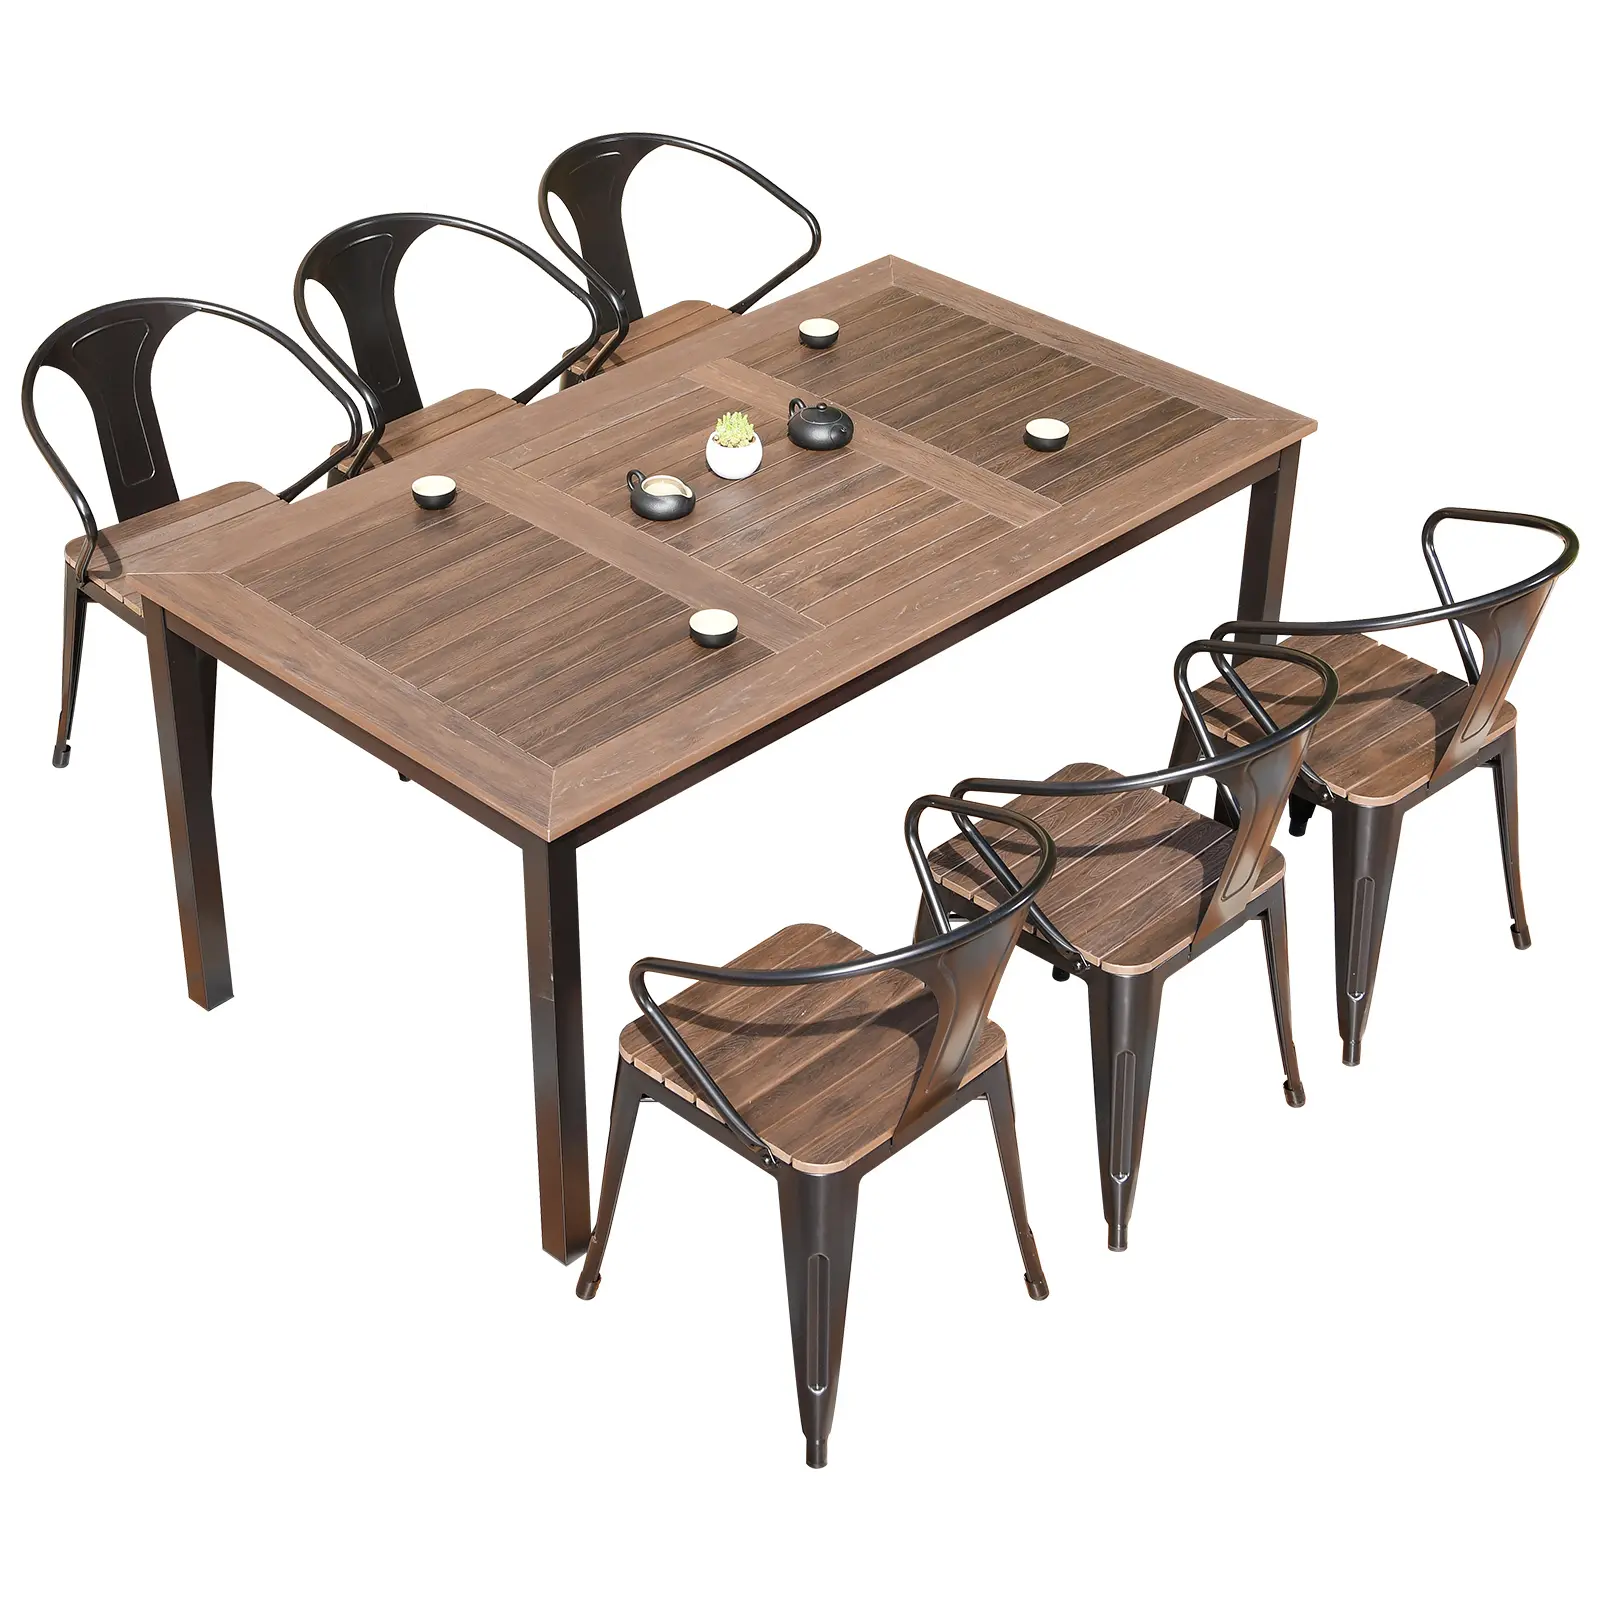 طقم أثاث طاولة طعام للمطاعم بتصميم جديد مكون من طاولات وكرسي خشبي وكرسي بلاستيكي للقهوة